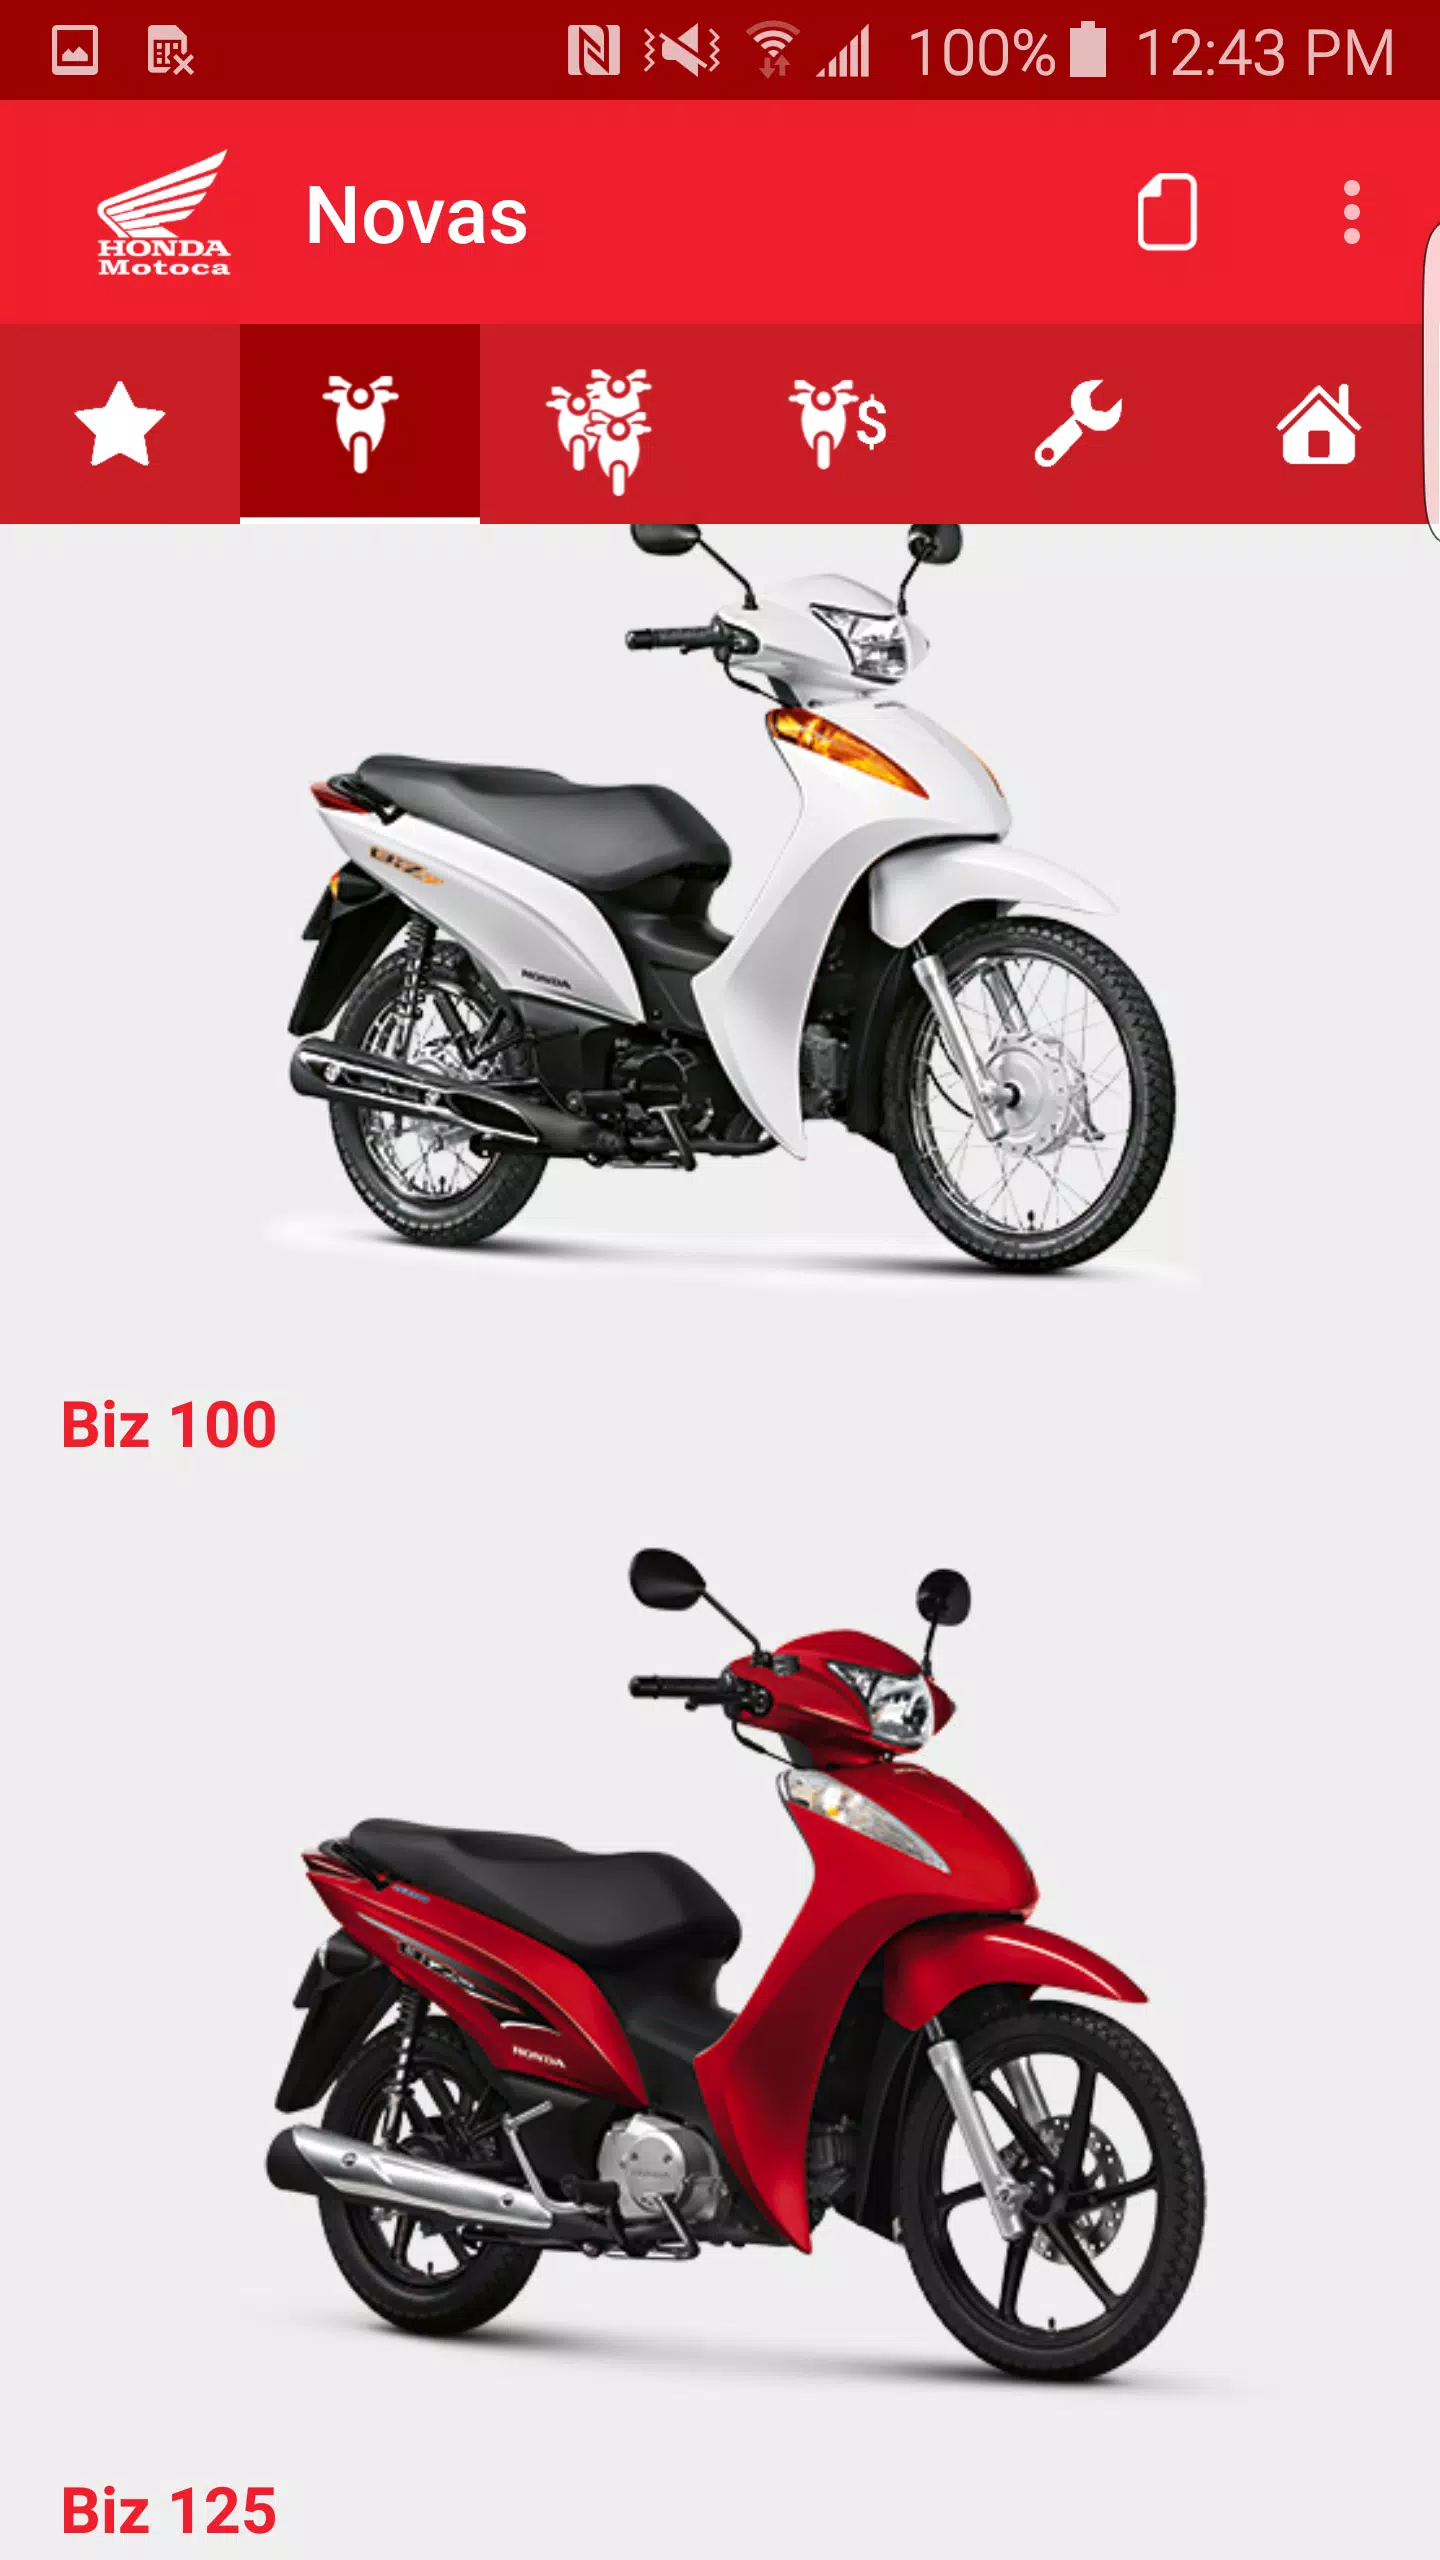 motos - Motopel Concessionária de Motos Honda